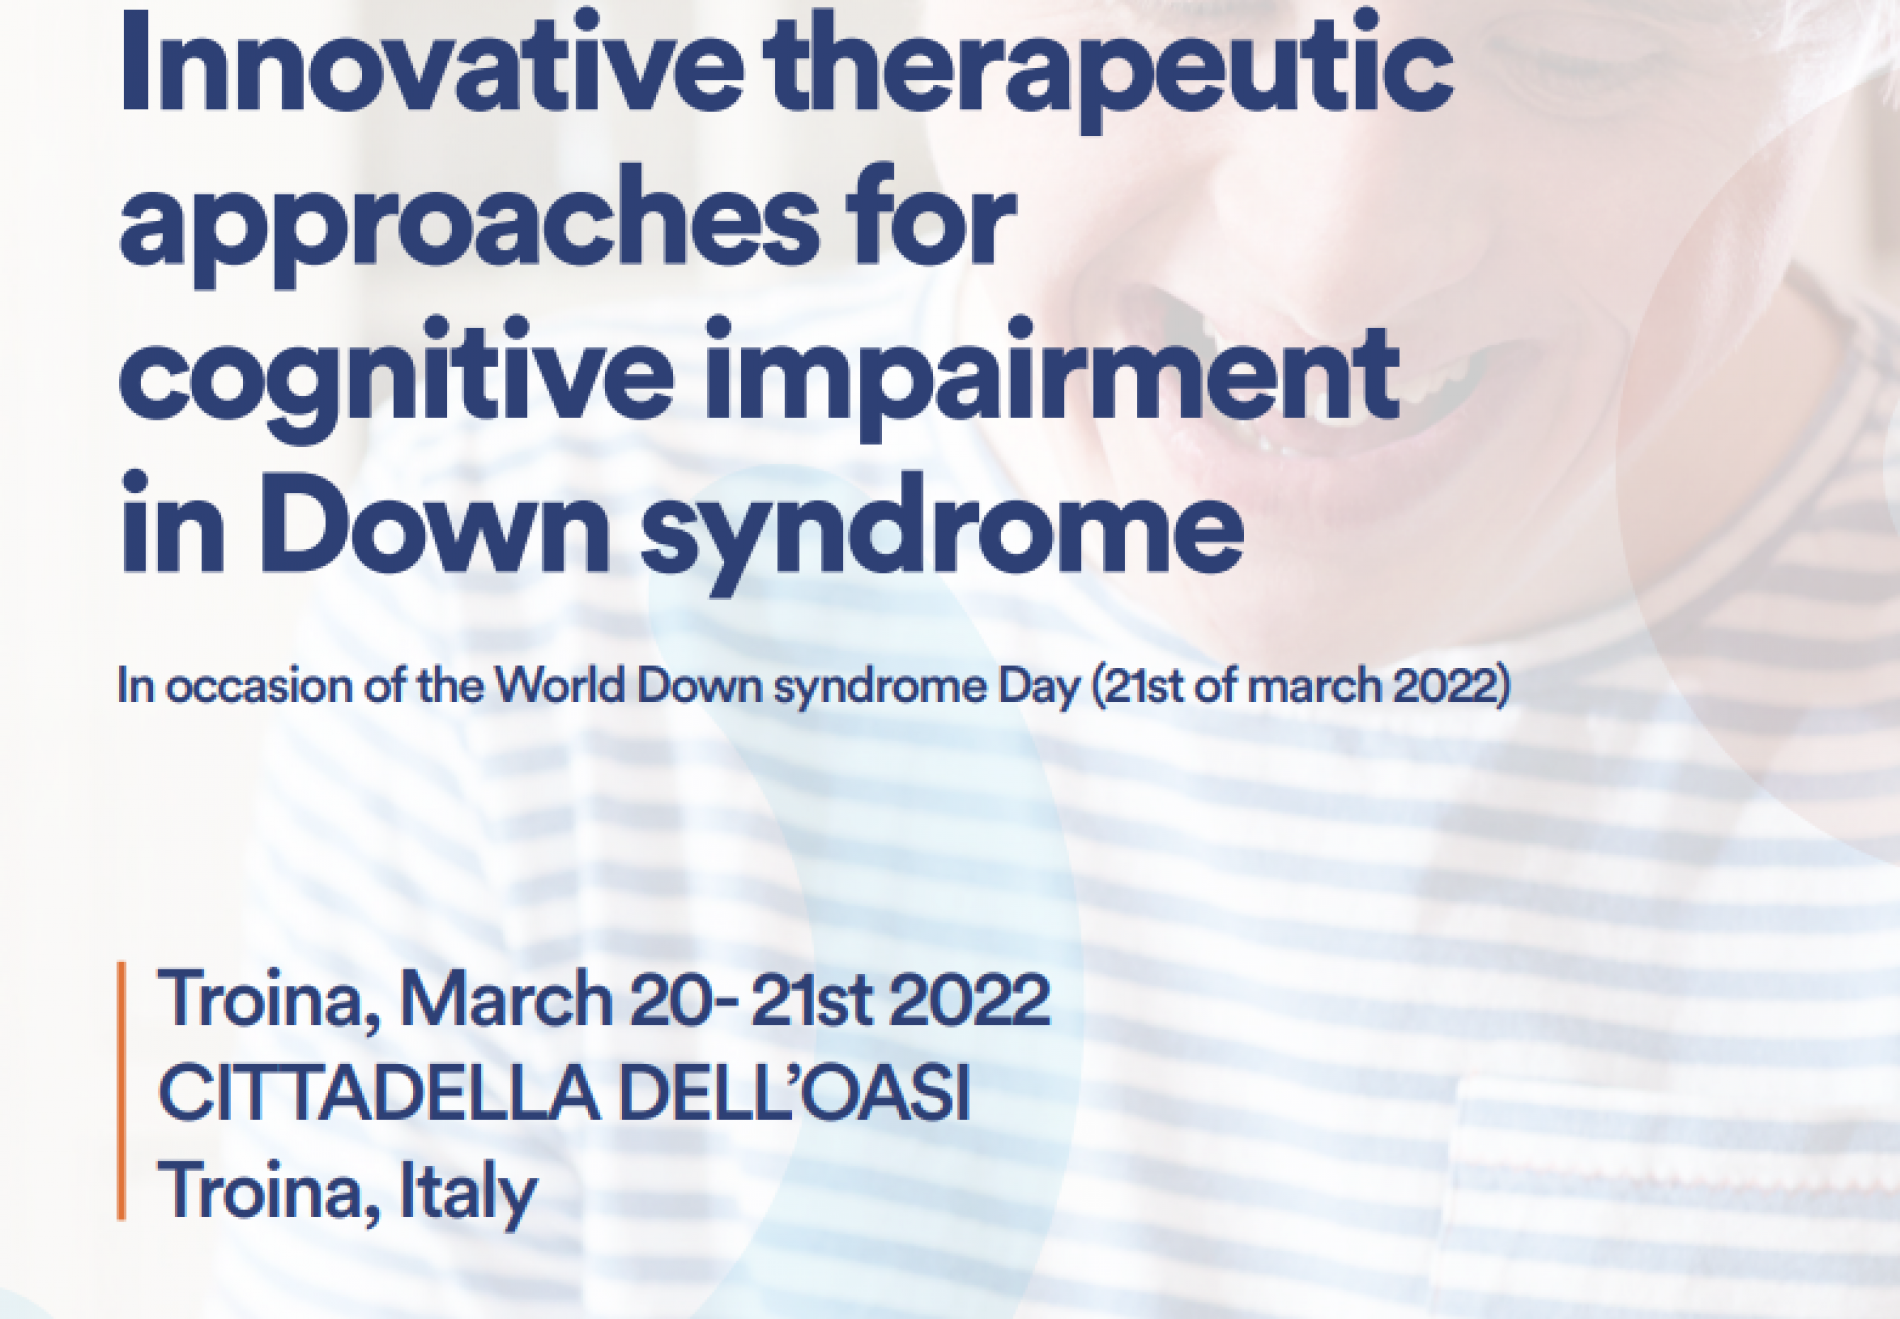 Un innovativo approccio diagnostico e farmacologico per il trattamento della Sindrome di Down